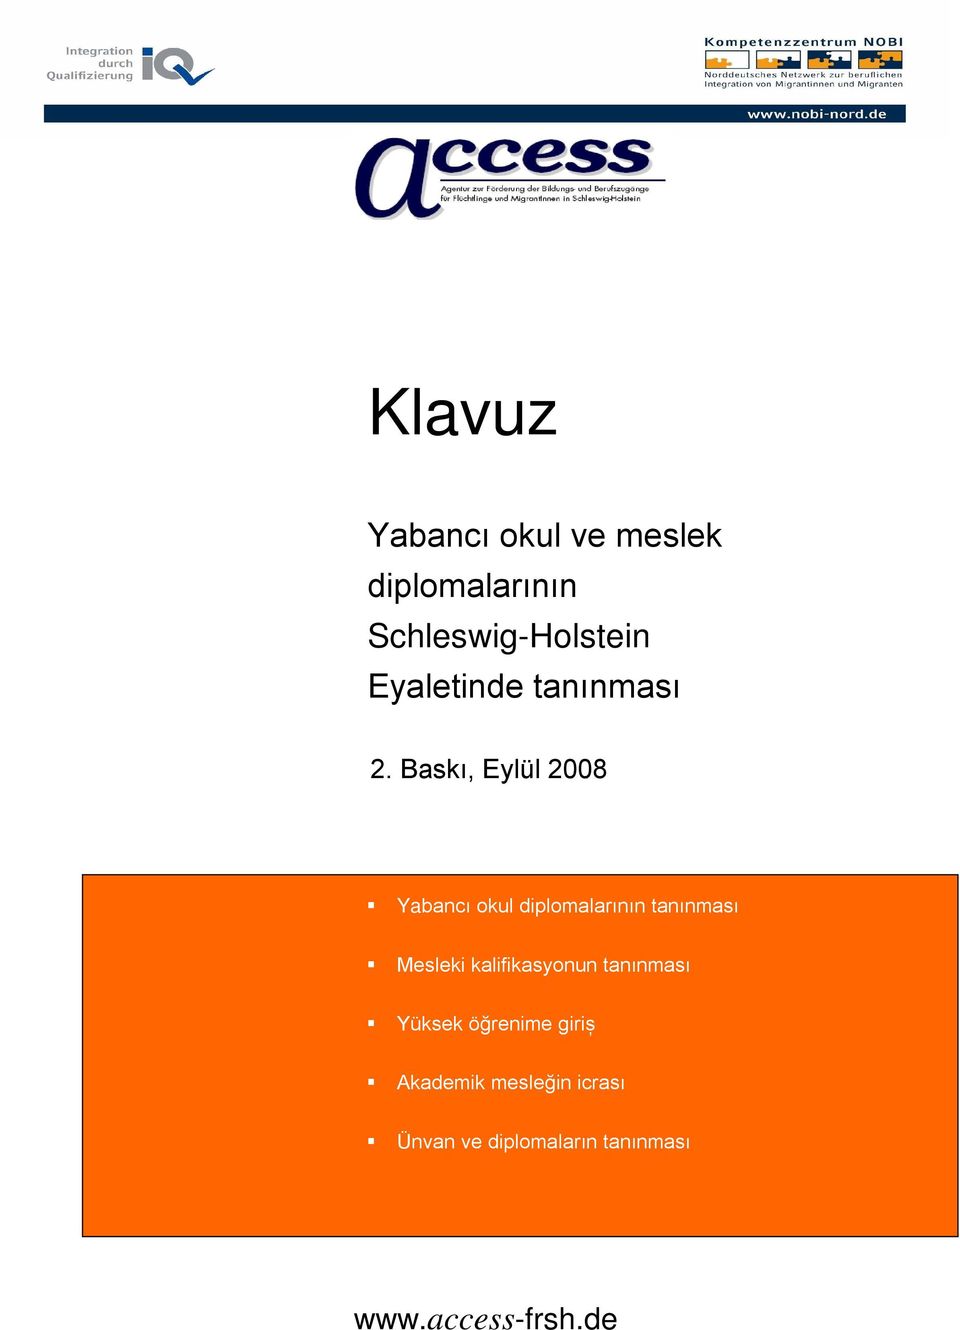 Baskı, Eylül 2008 Yabancı okul diplomalarının tanınması Mesleki